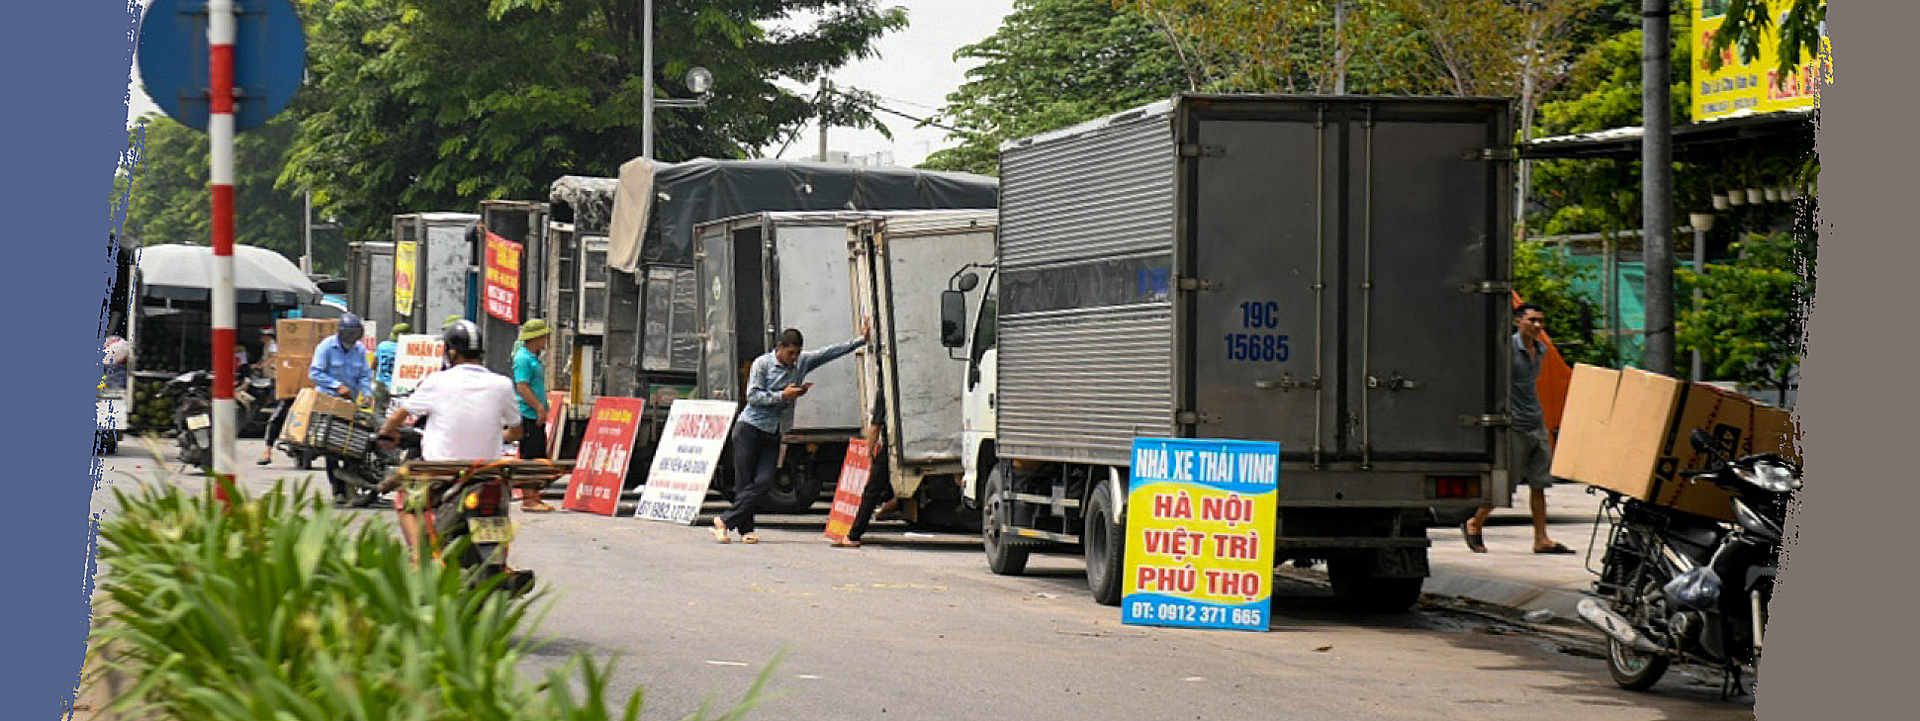 Hàng trăm tài xế xe tải cỡ nhỏ dọc vành đai 3 gần đại lộ Chu Văn An có chung mong muốn về một bến bãi trung chuyển chính thức để ổn định công việc.